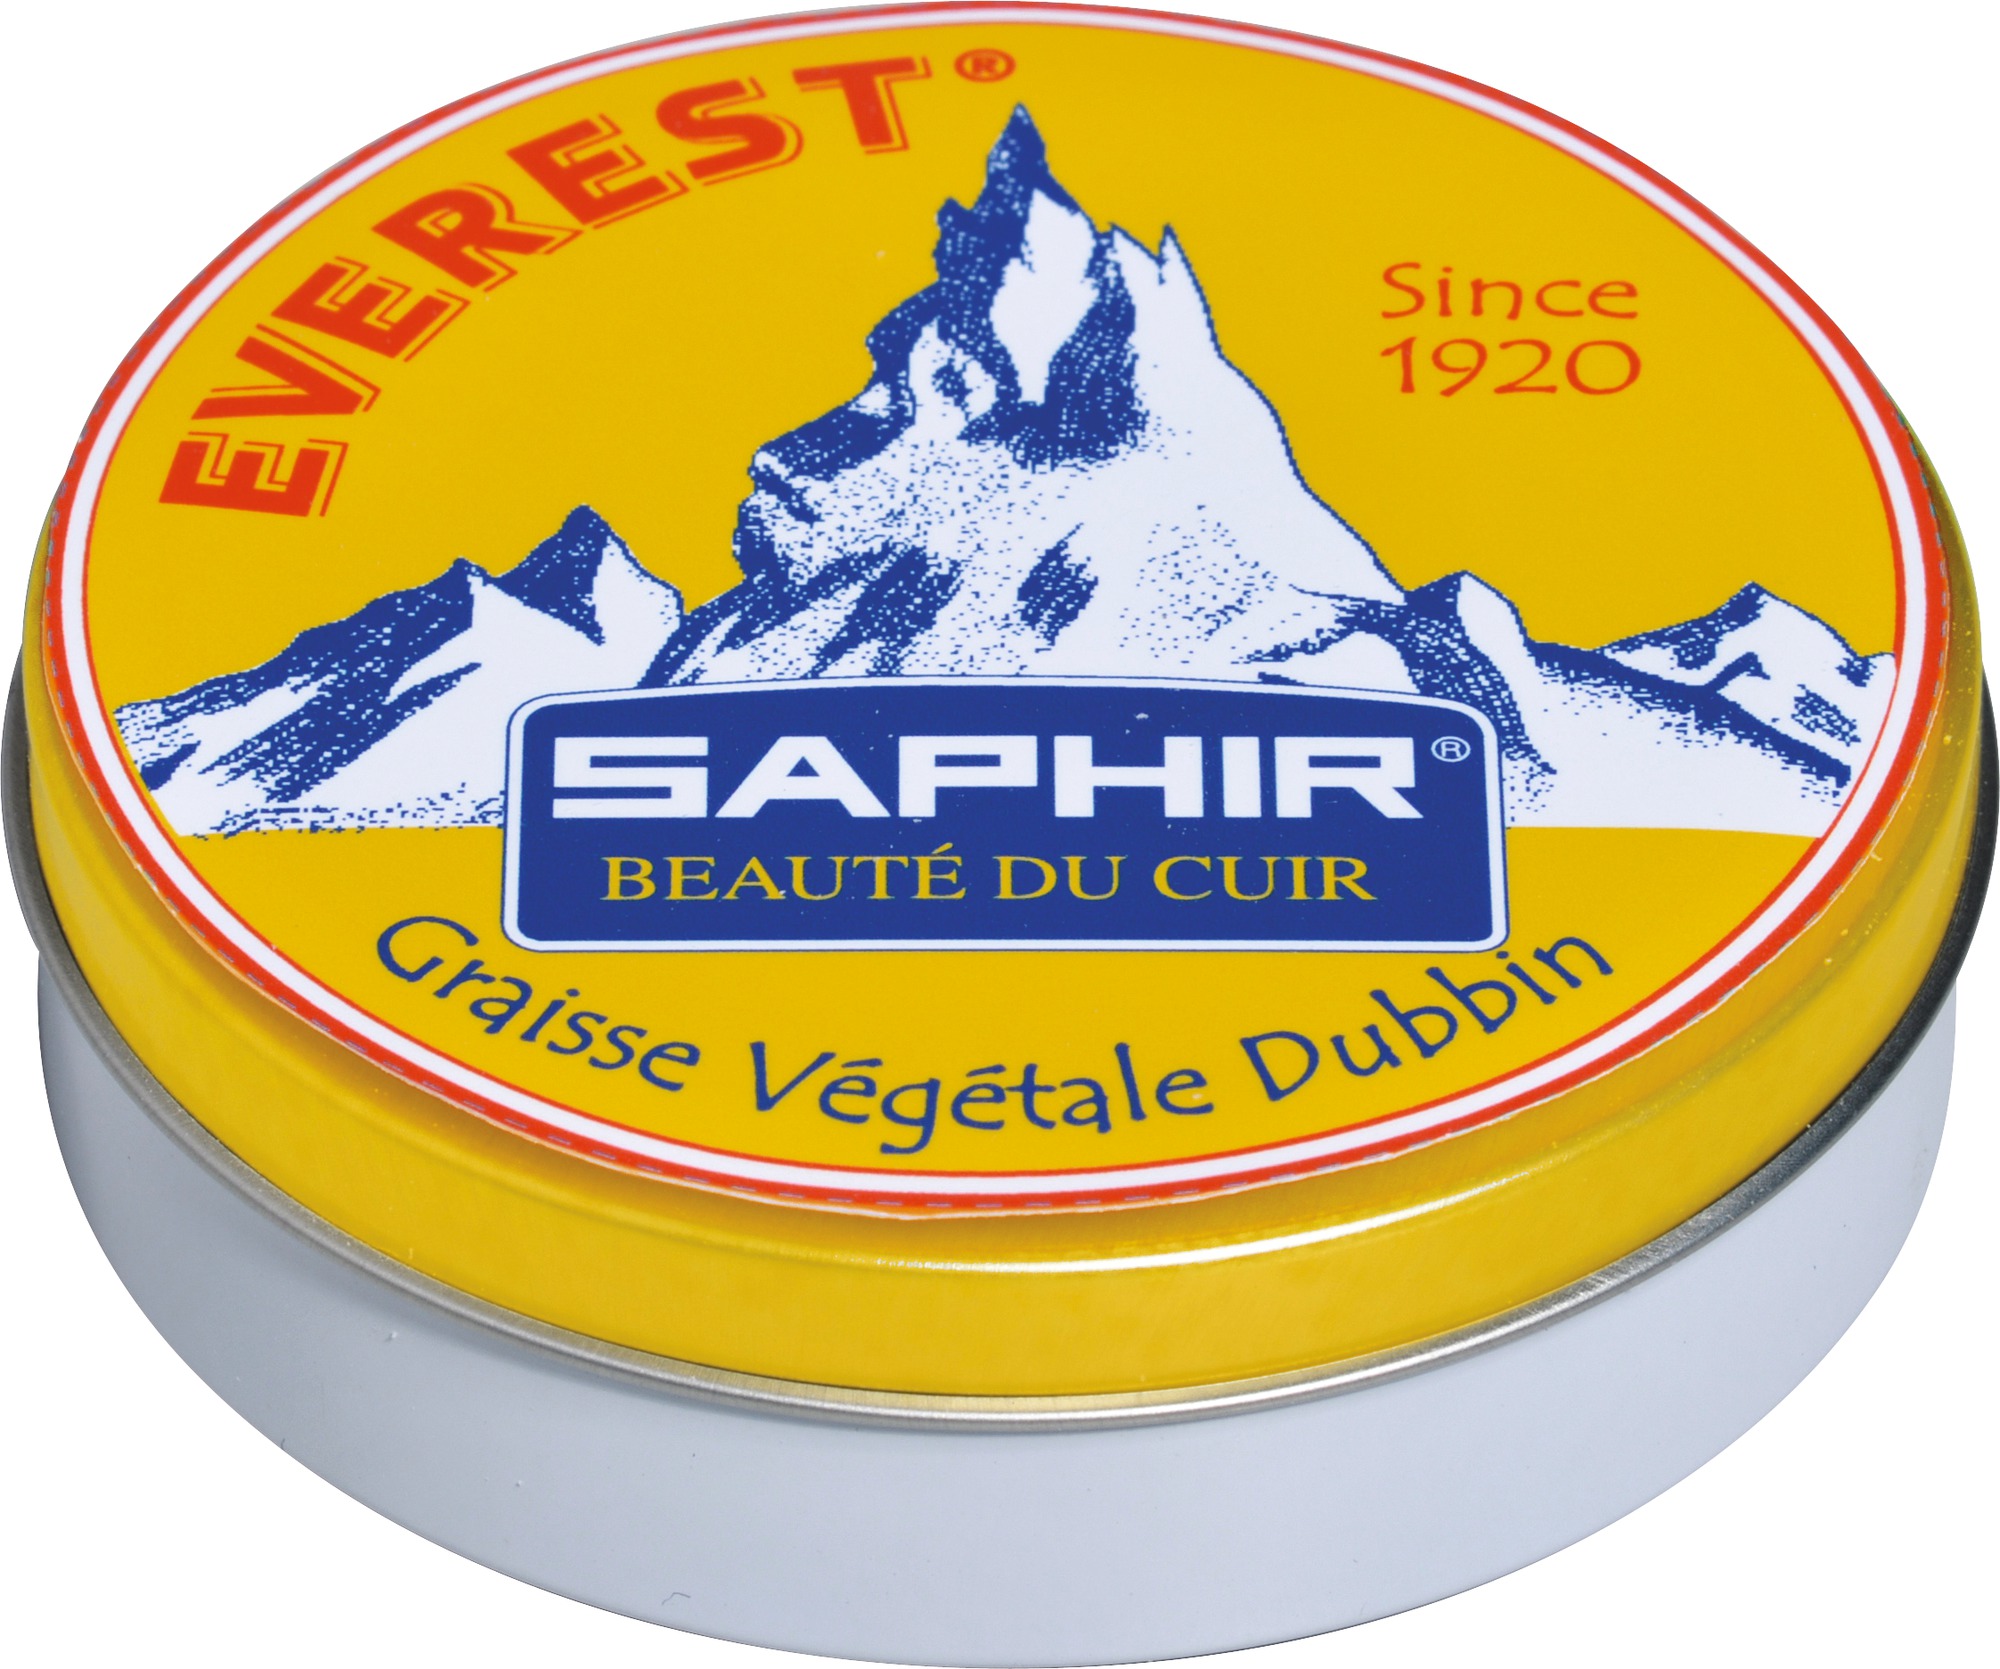 Graisse végétale Dubbin Everest Saphir - 100 ml - Blanc